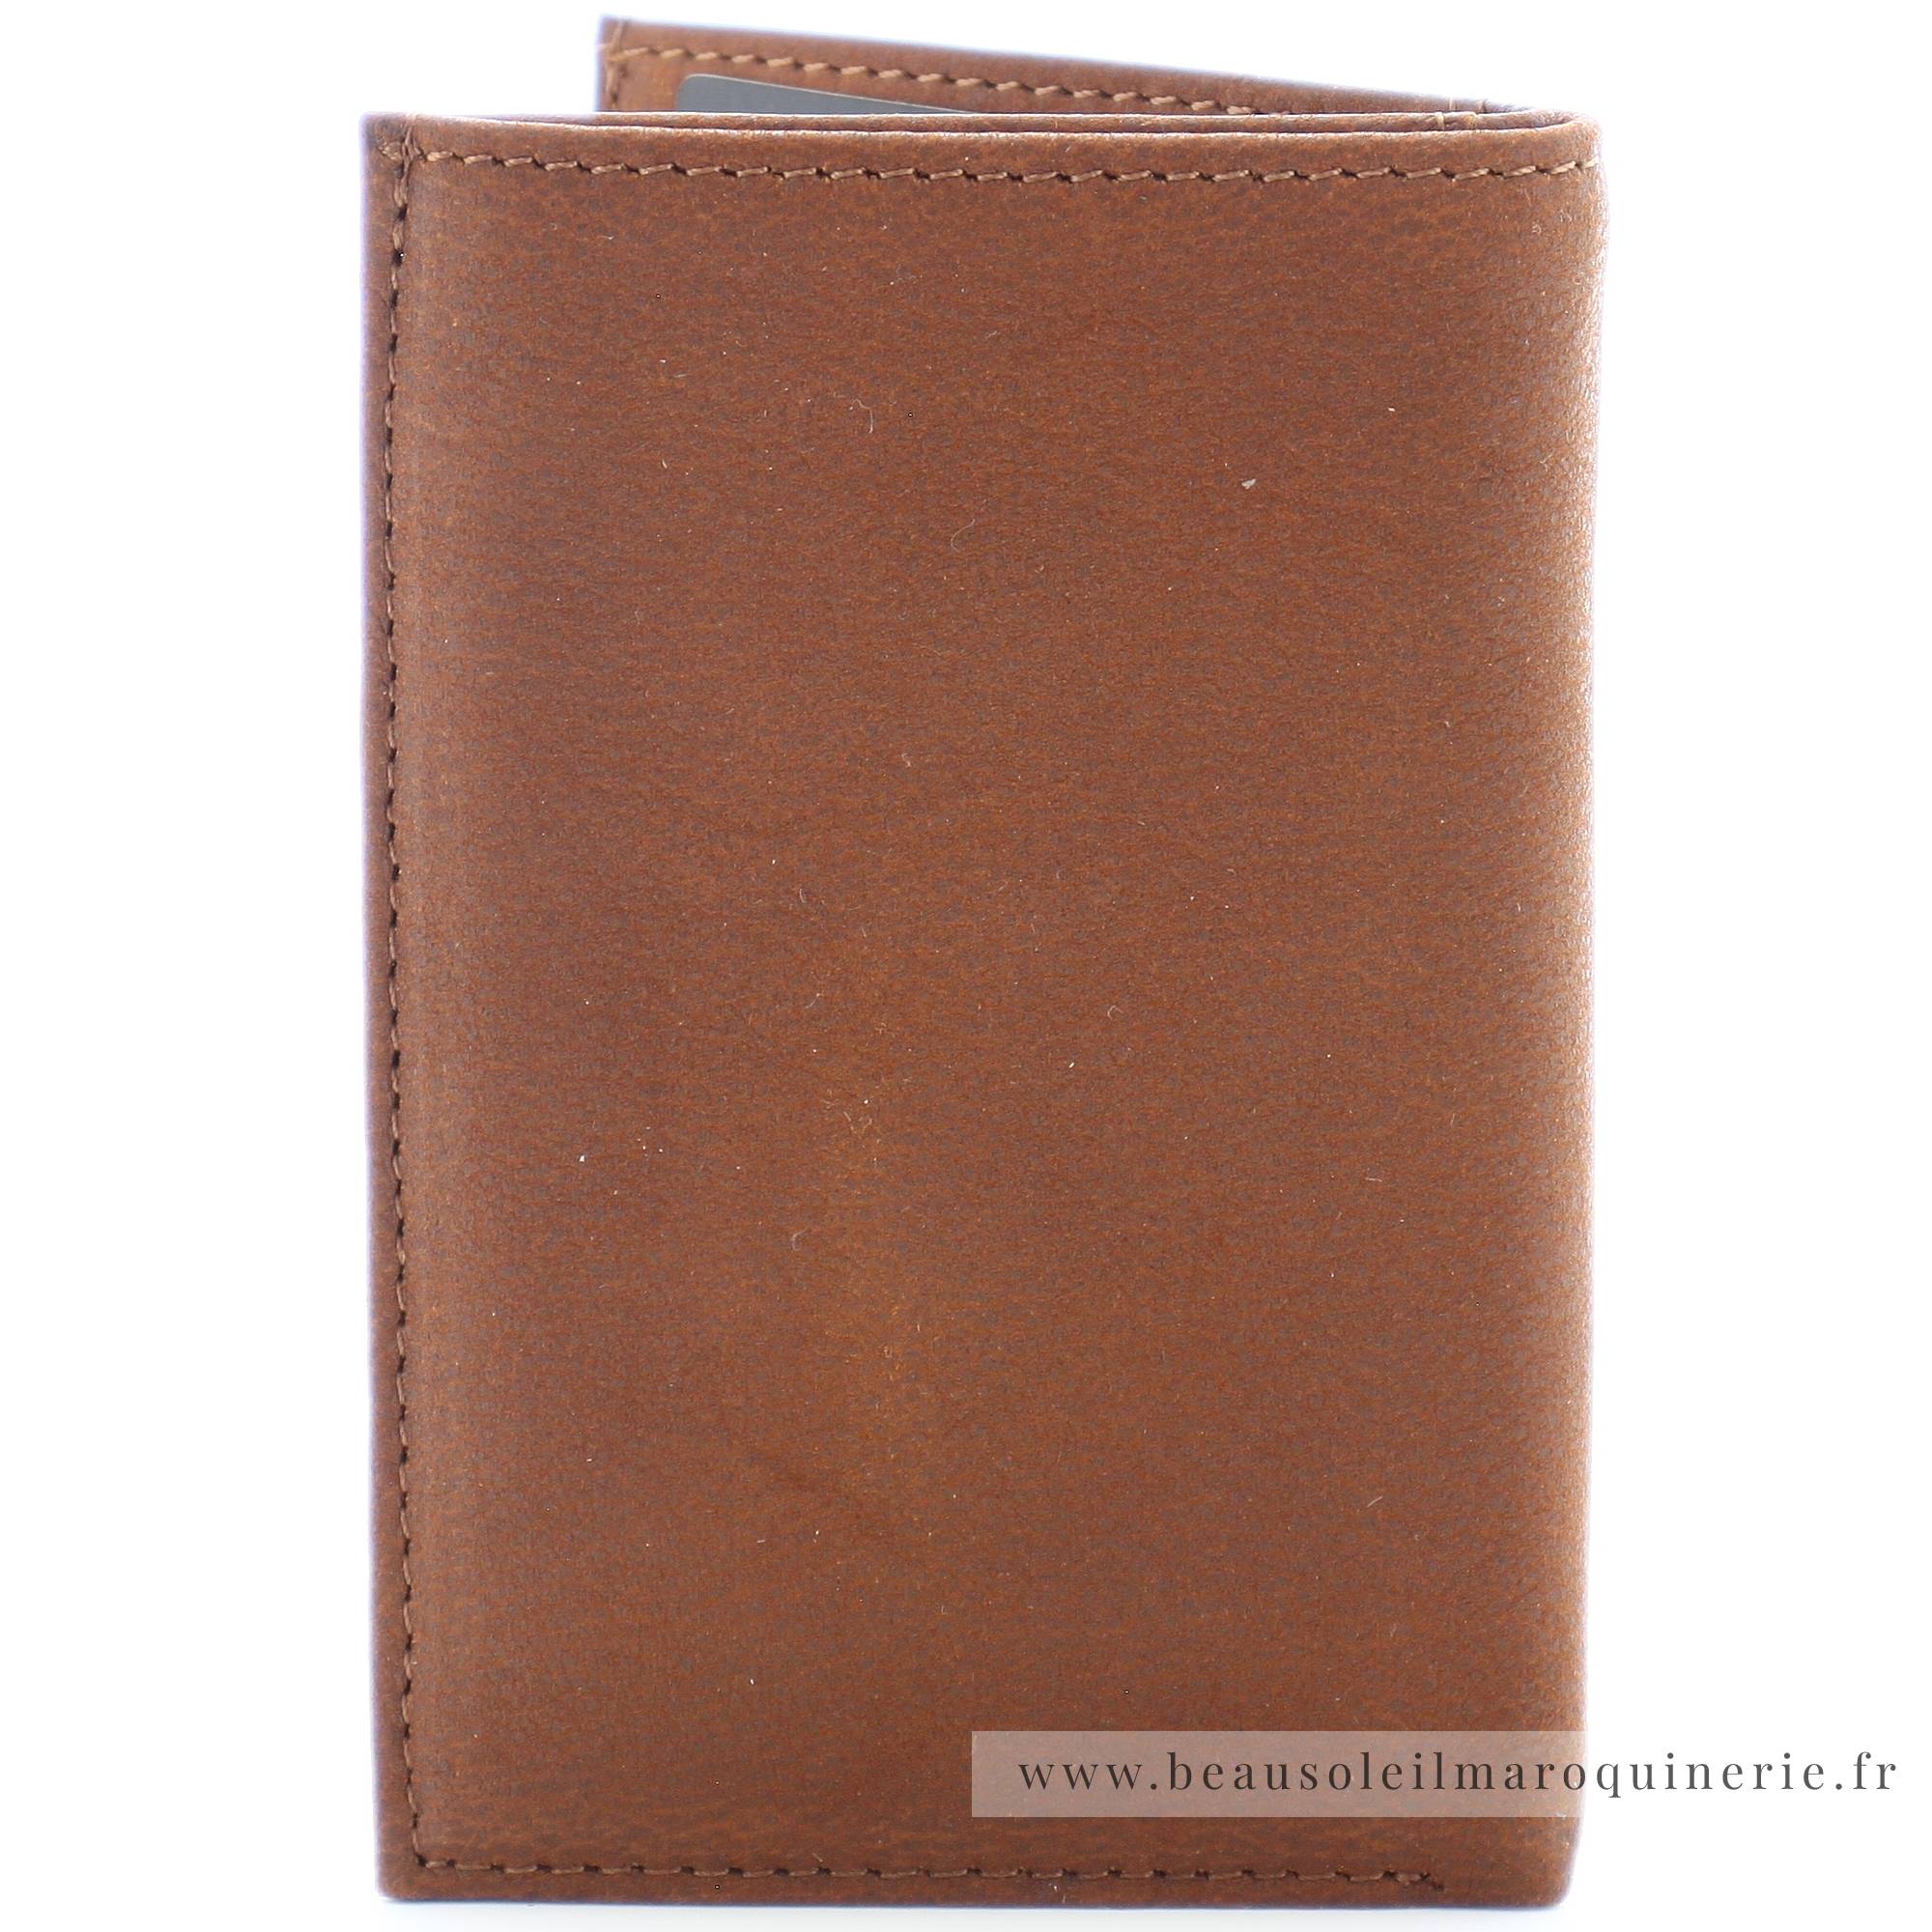 Porte-cartes en cuir pleine fleur 1978-119-B Arthur Aston couleur cognac vue de dos